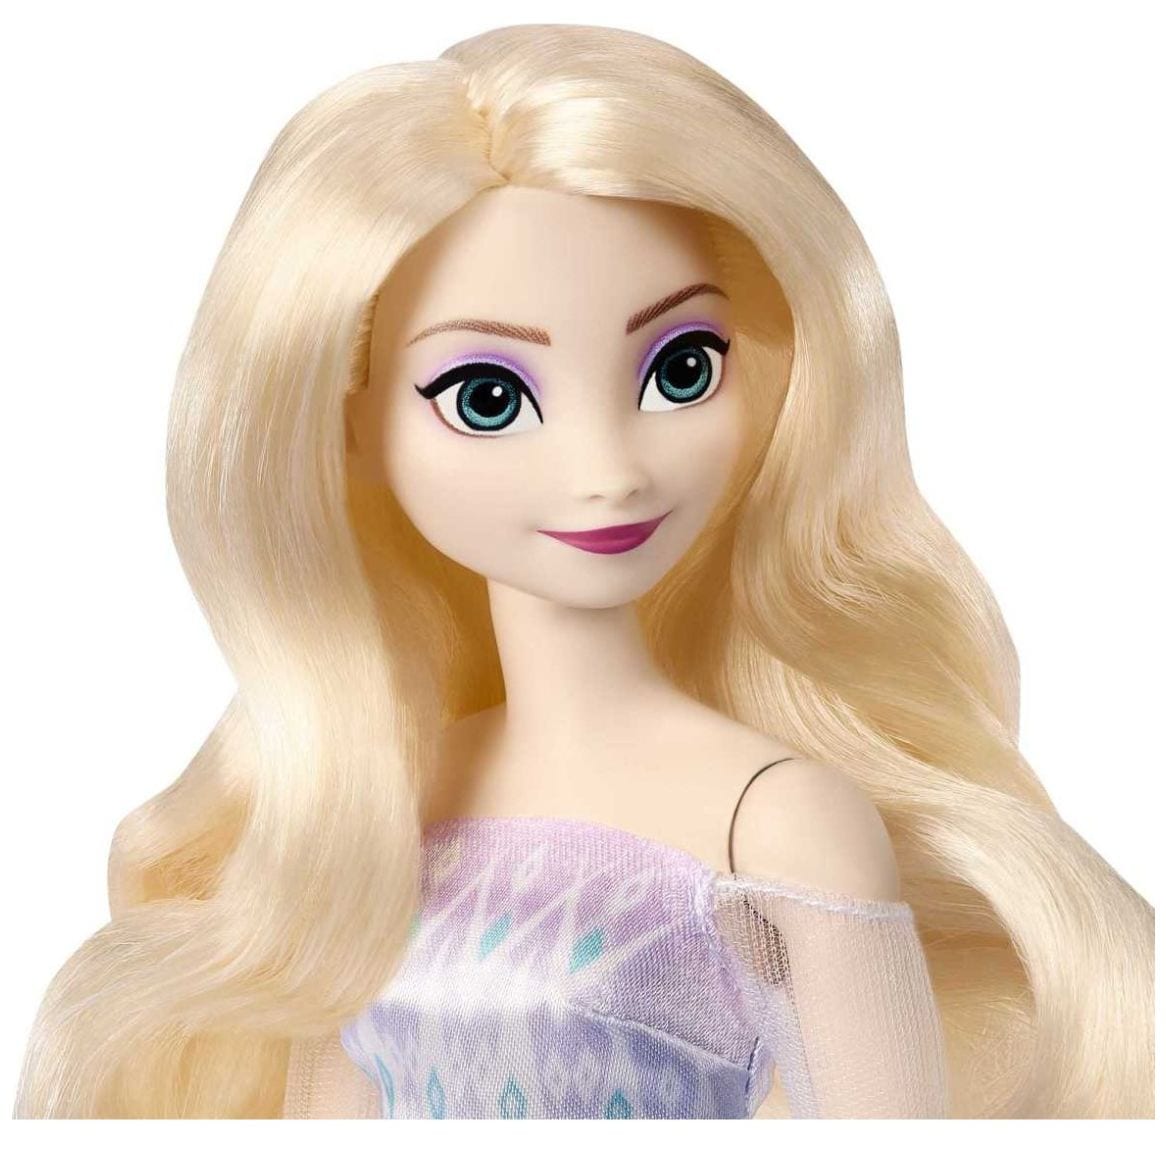 Muñecas de Colección Reinas Anna y Elsa Disney Frozen